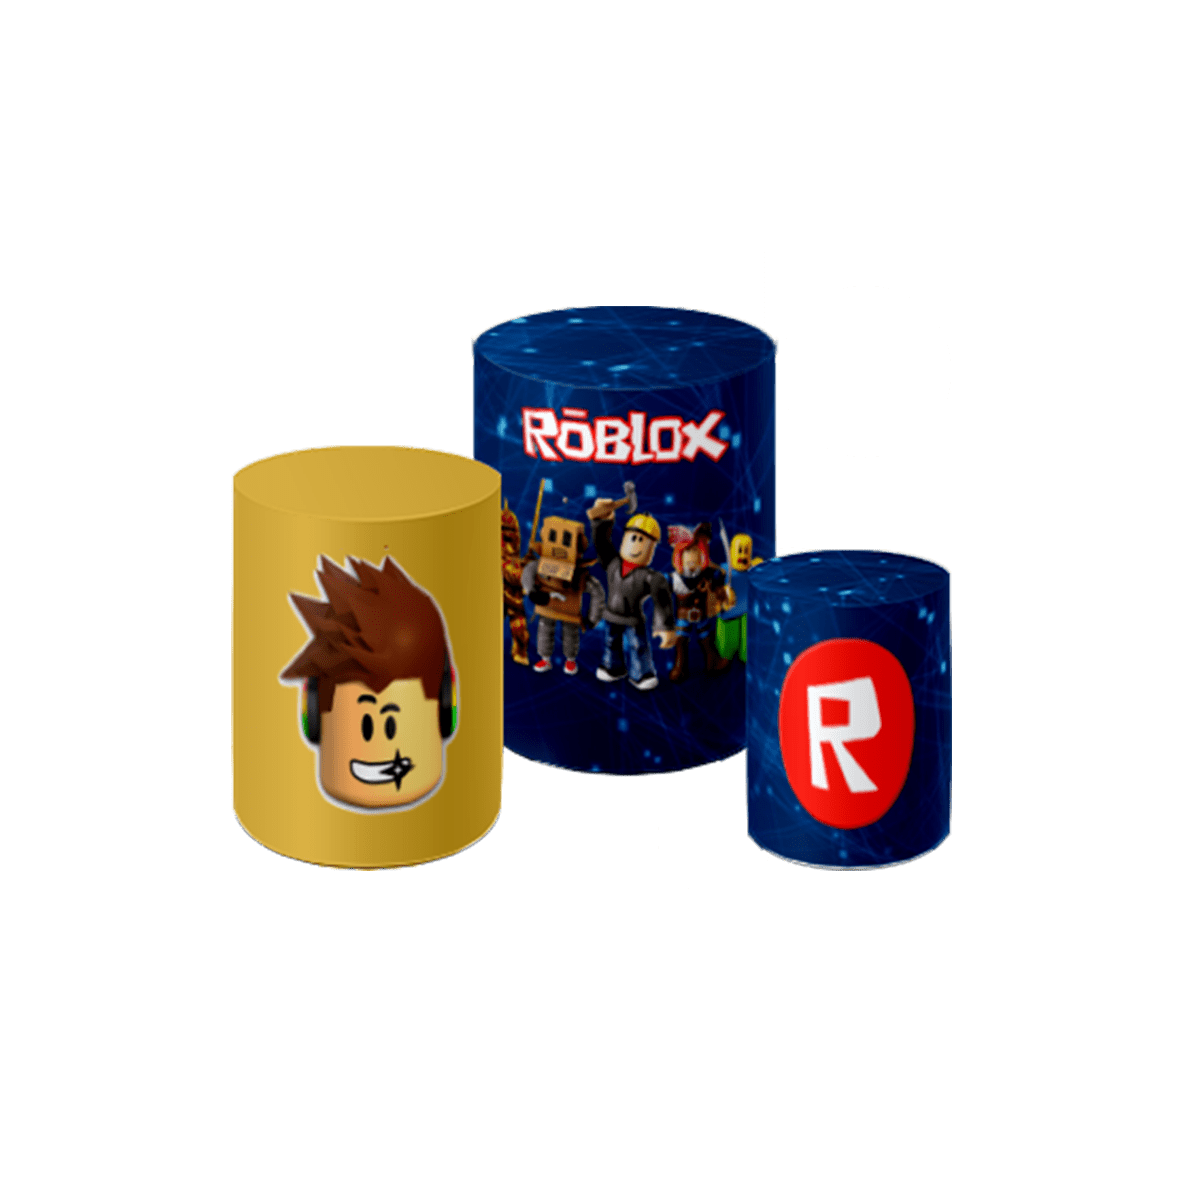 15 und ROBLOX ROSA / Festa Roblox / Personalizados Roblox